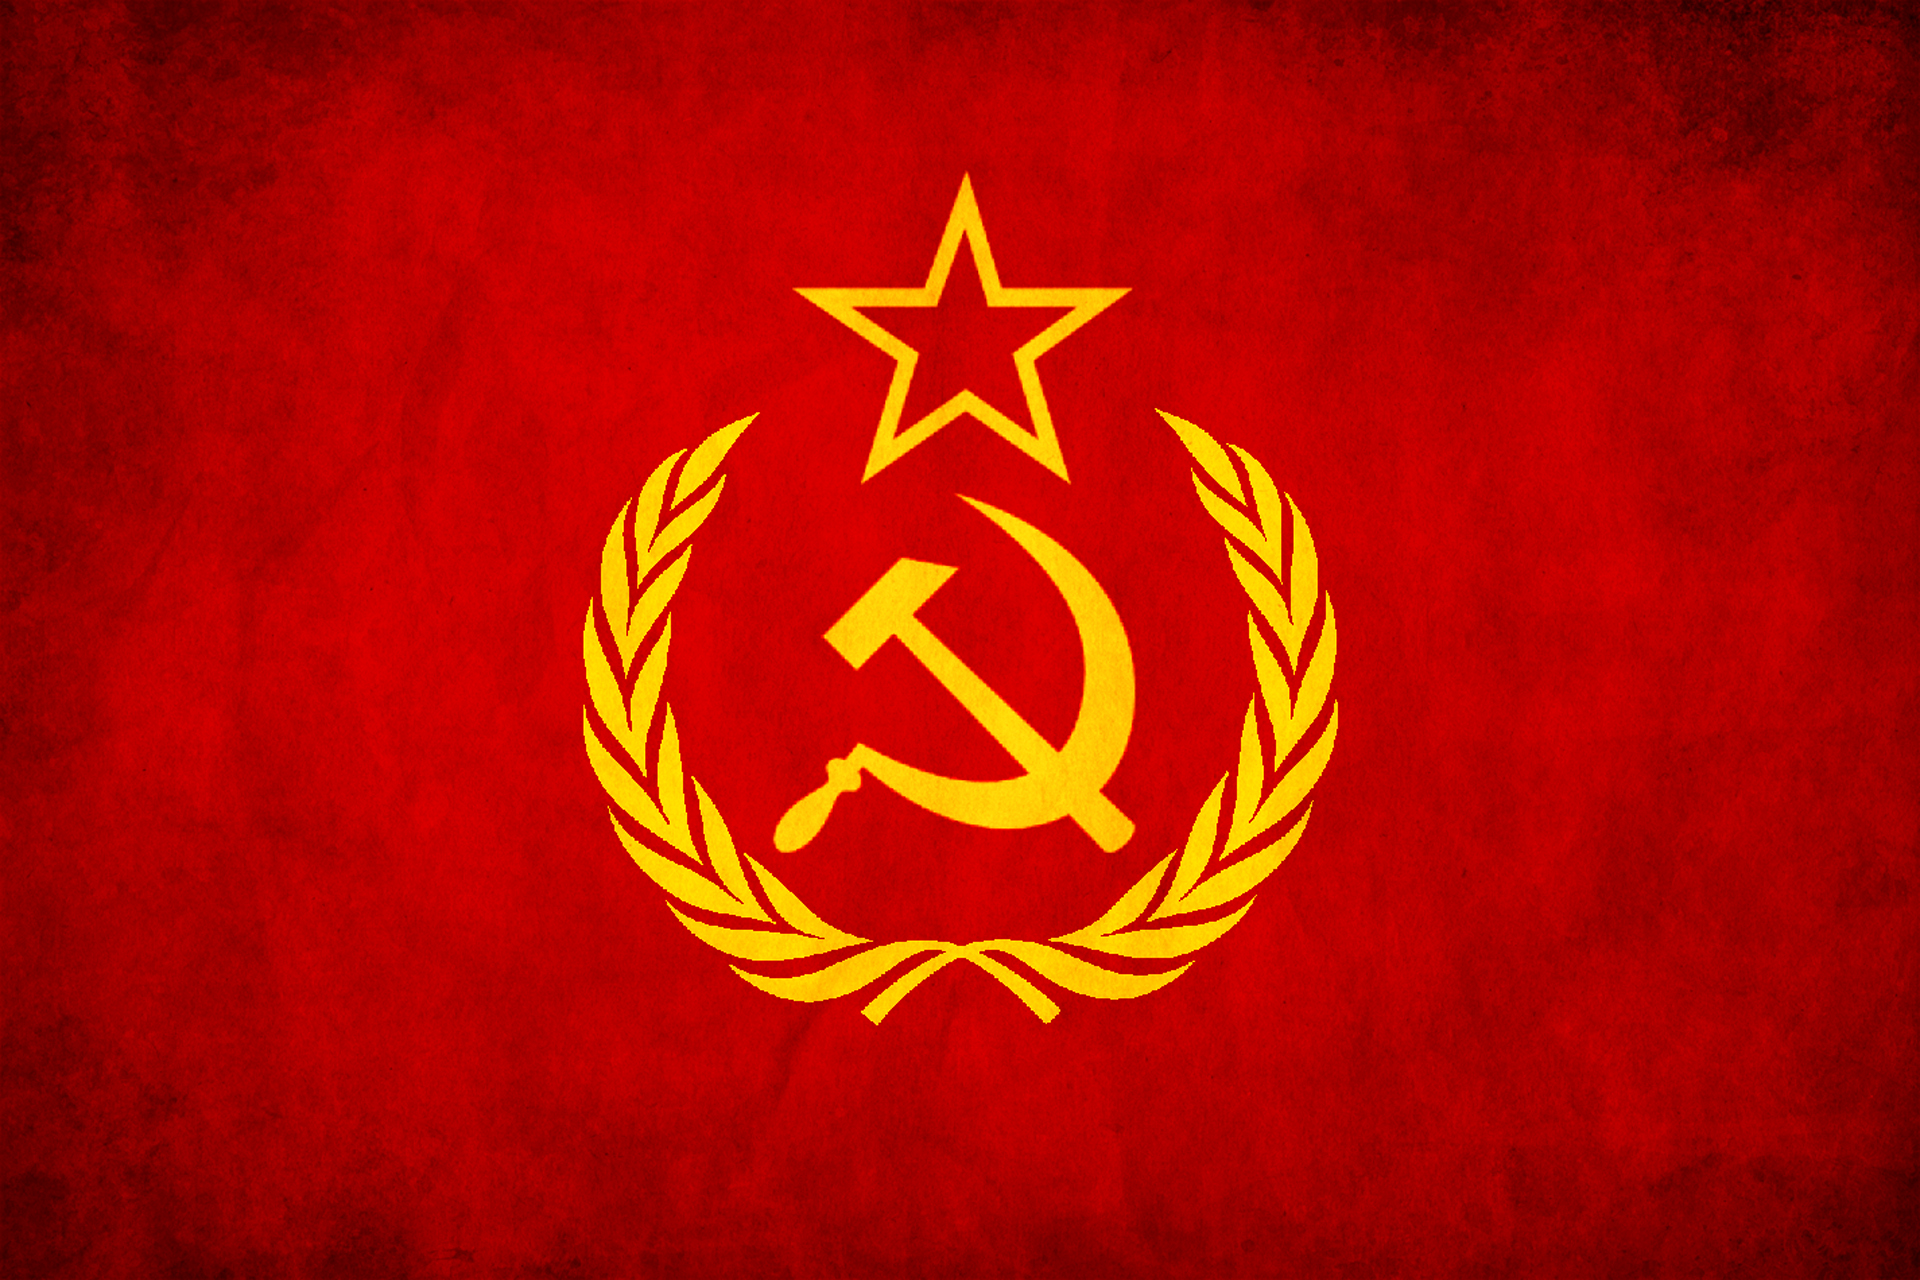 USSR grunge flag